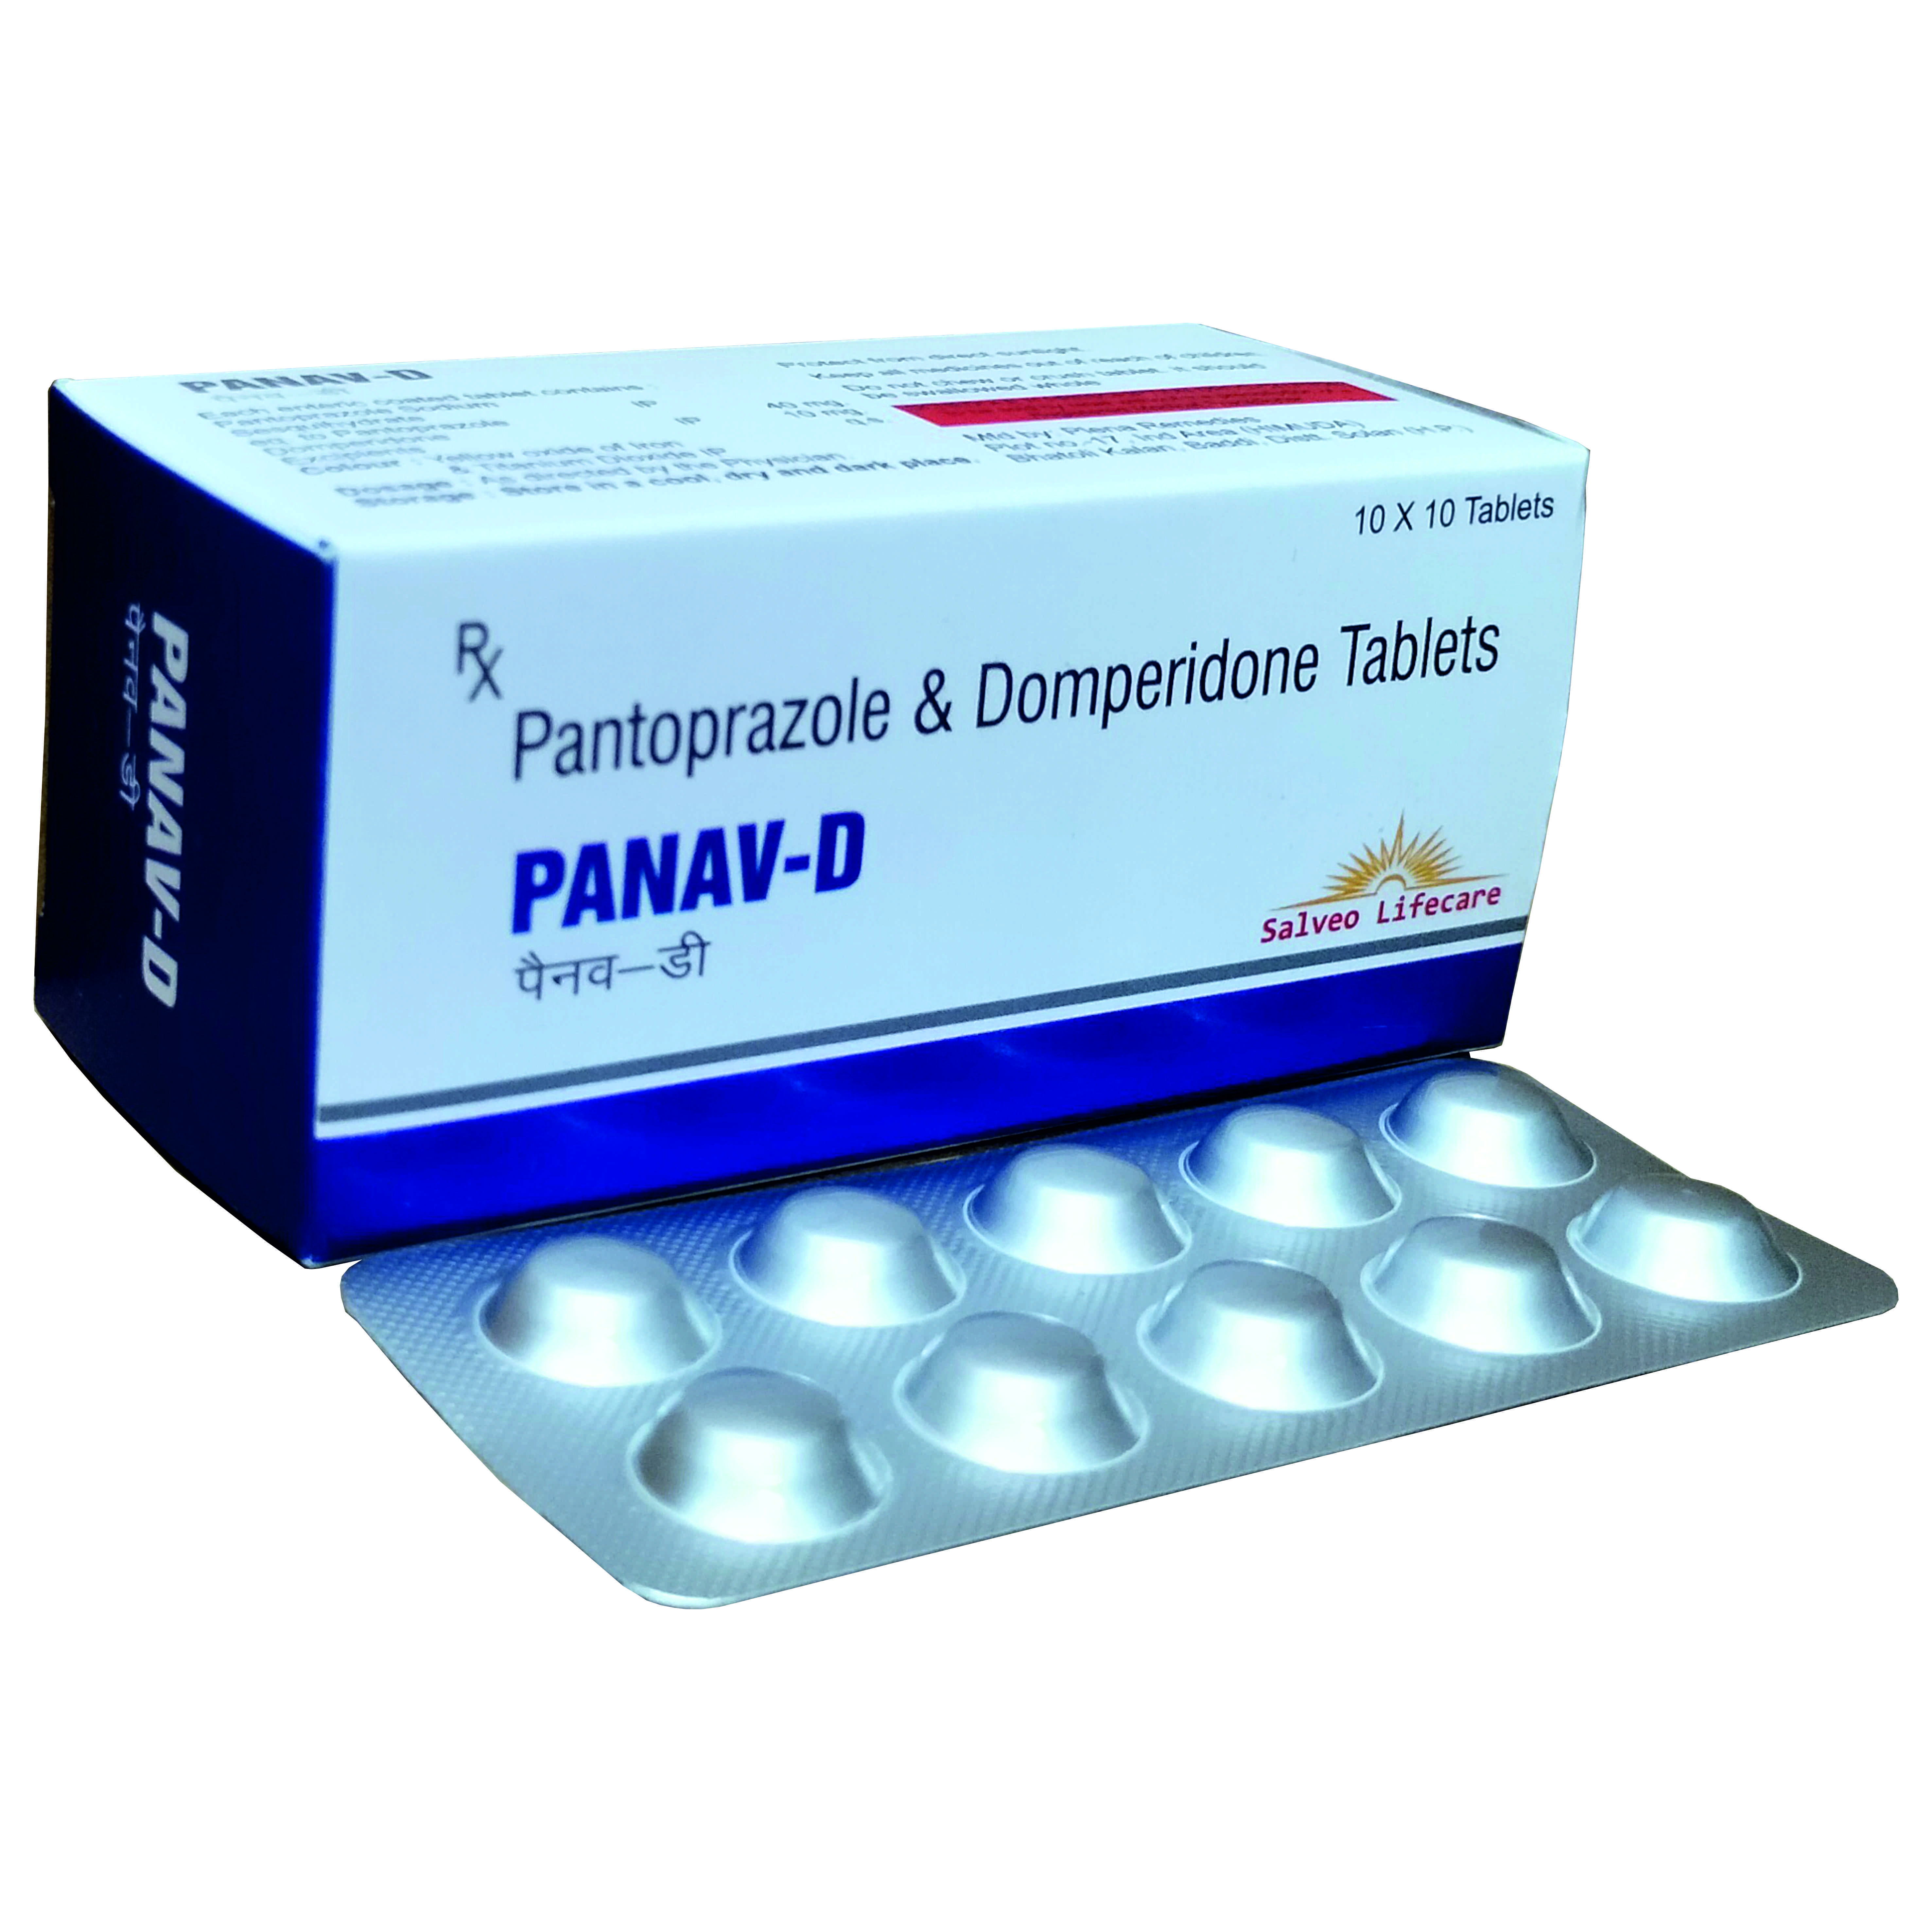 pantoprazole 40 mg, domperidone 10 mg